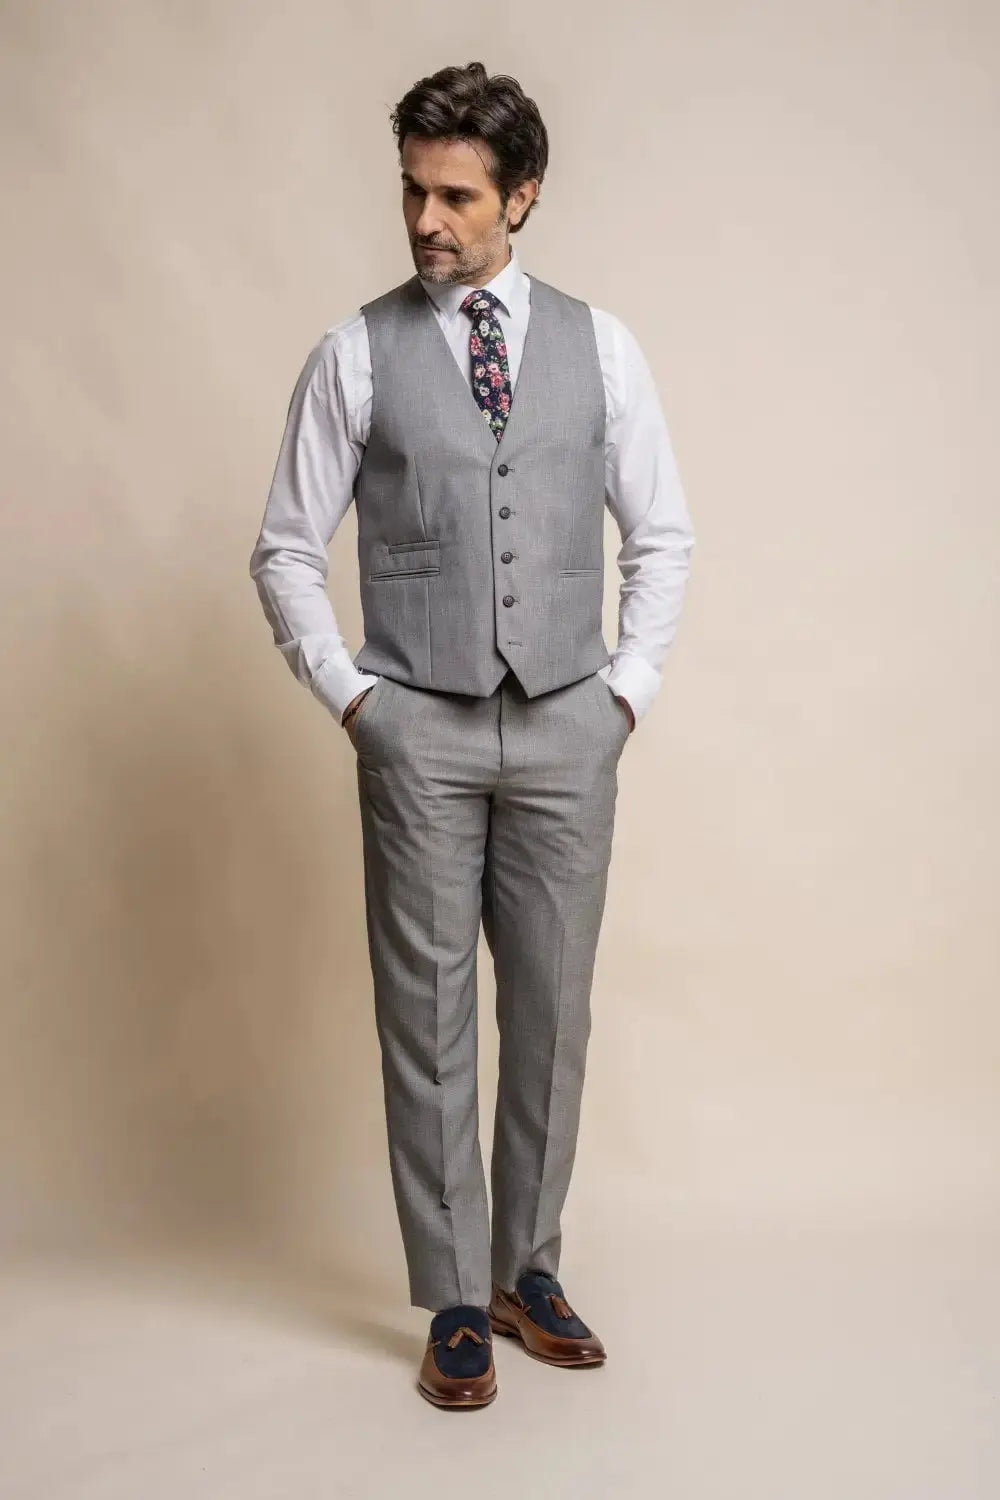 HOUSE OF CAVANI: Reegan Grey Slim Fit Suit